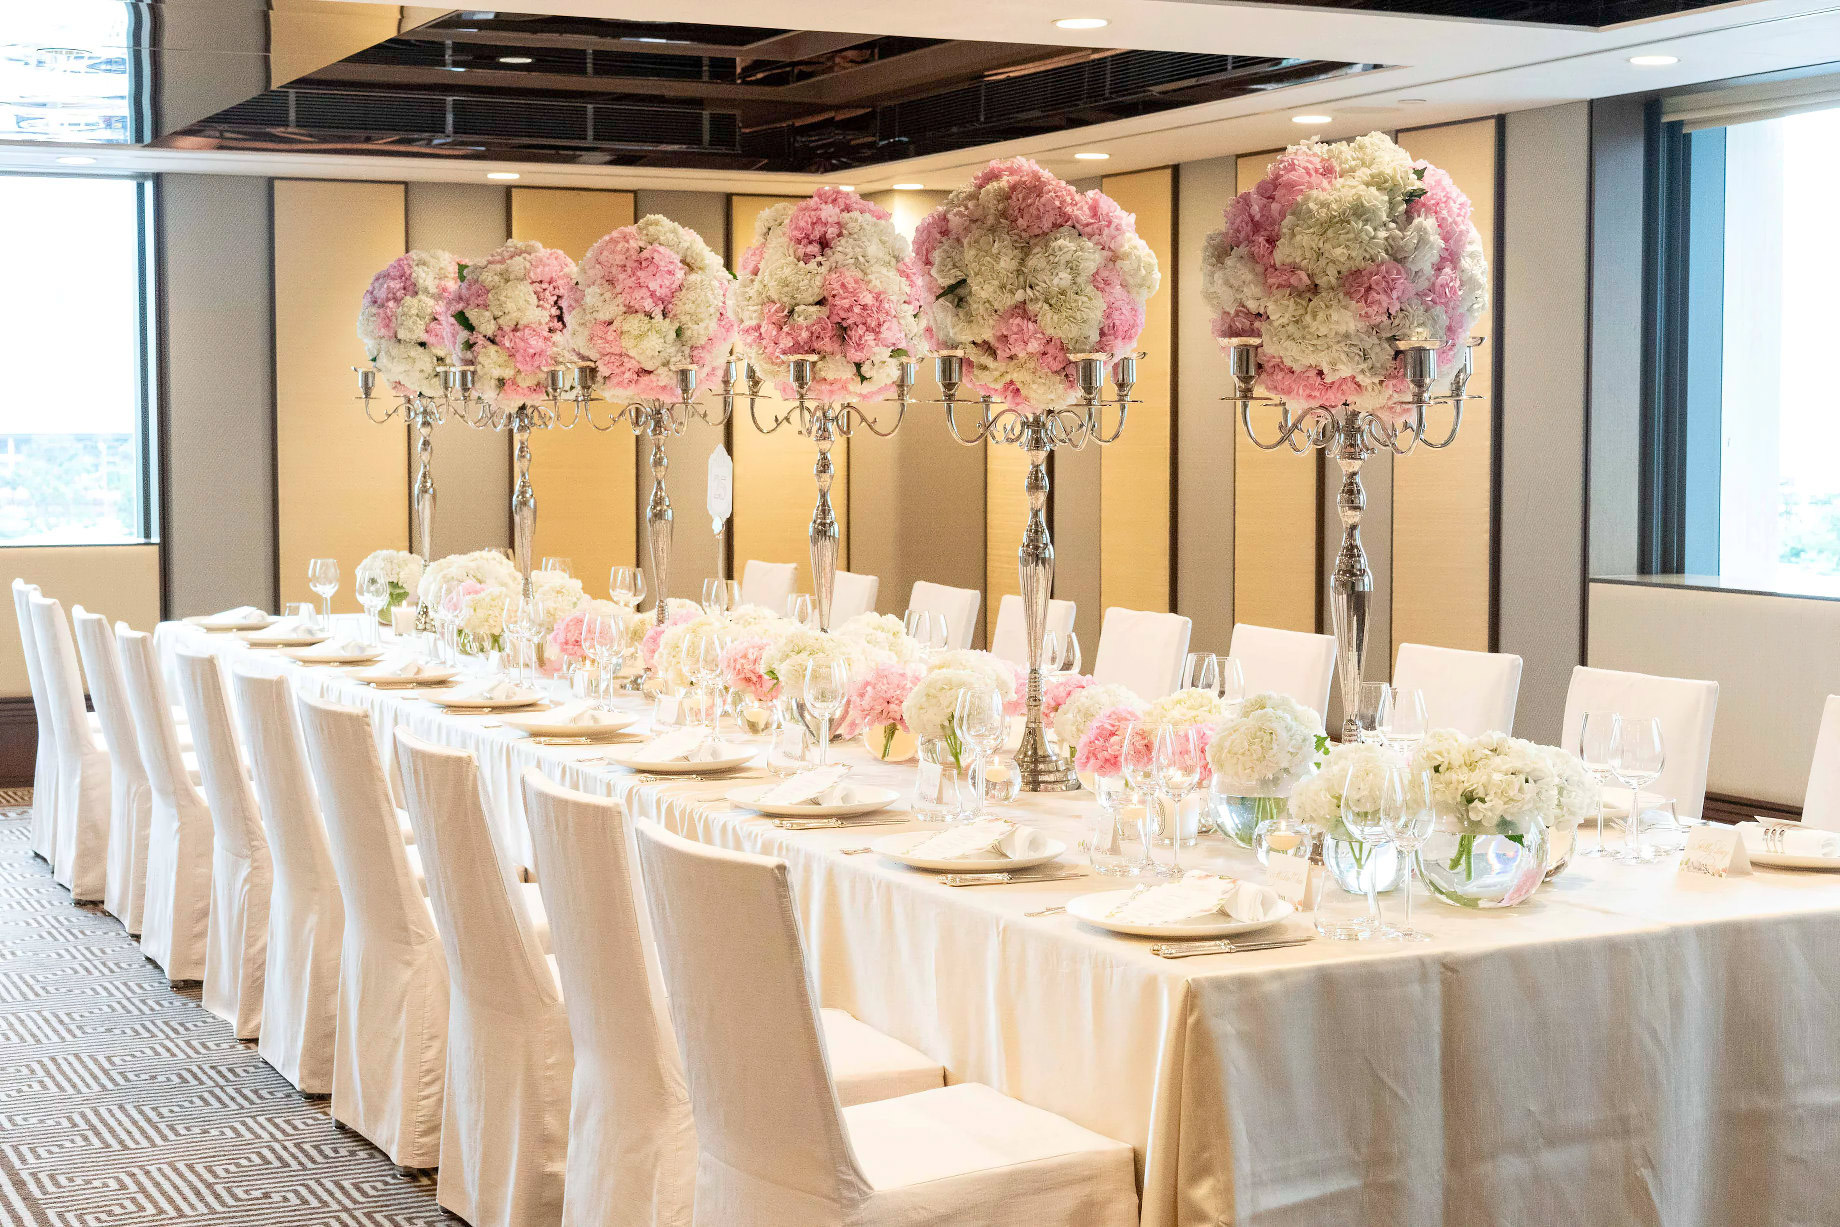 Mandarin Oriental, Hong Kong Hotel – Hong Kong, China – Chater Room Wedding